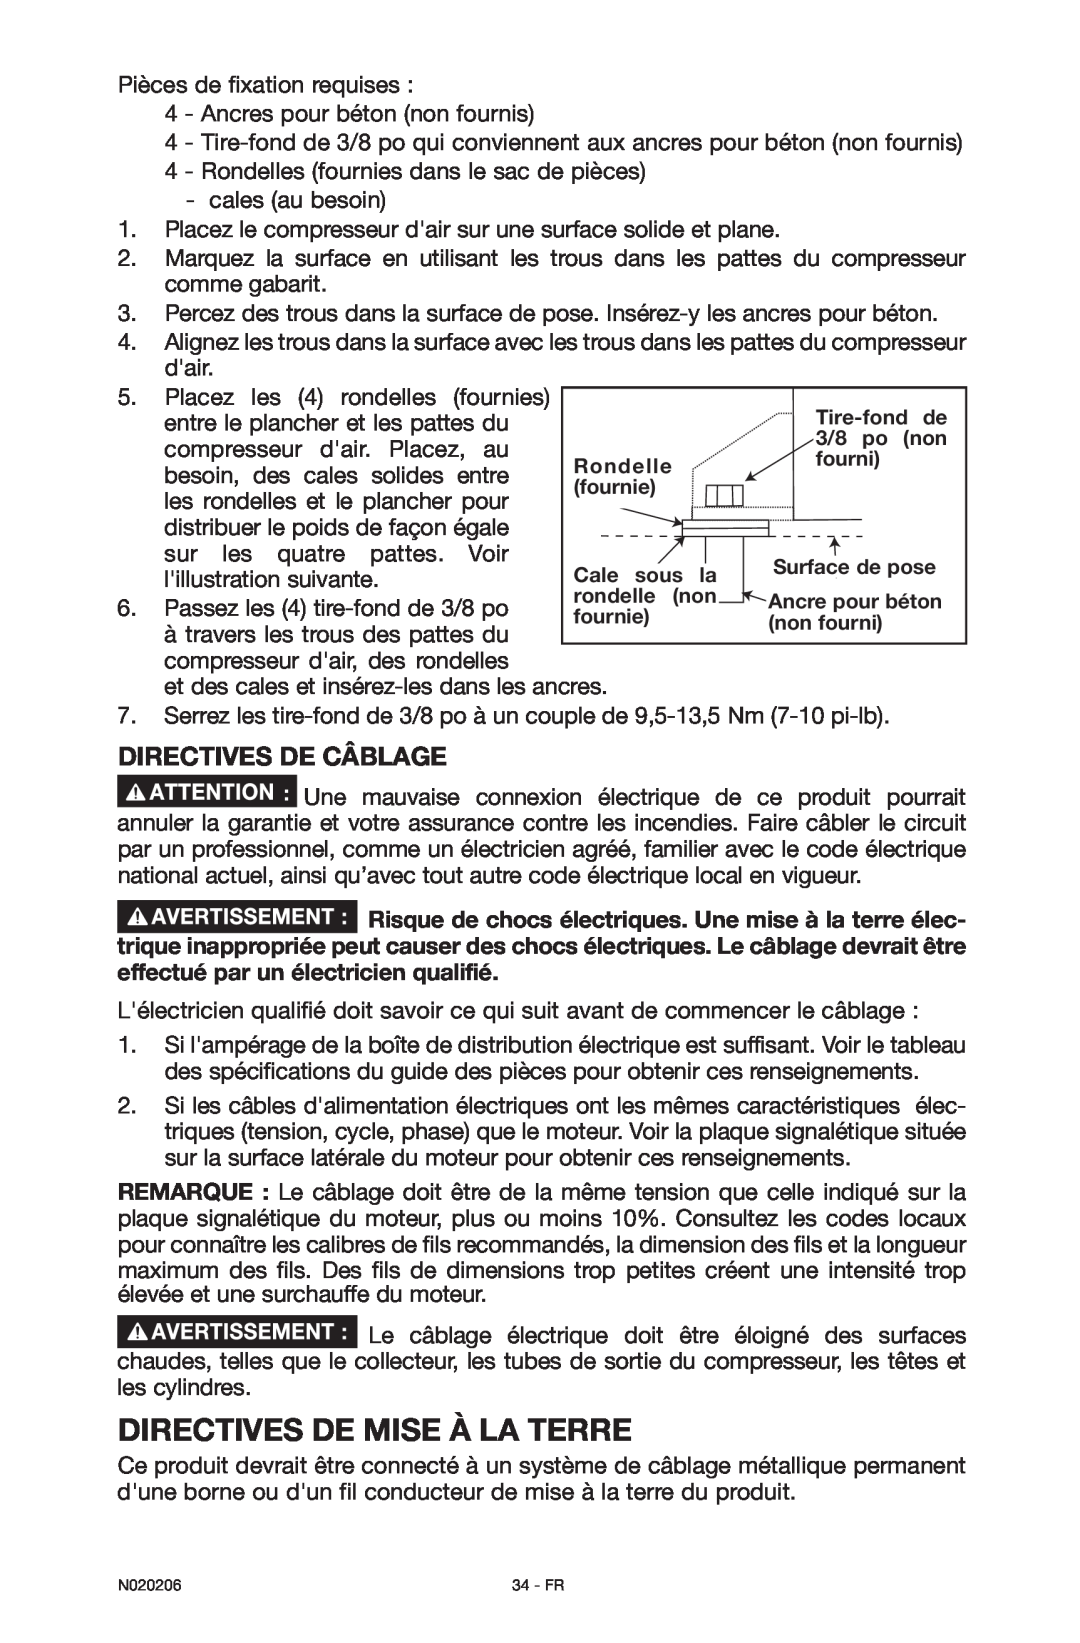 Porter-Cable N020206-NOV08-0, C7501M instruction manual Directives De Mise À La Terre, Directives de câblage 